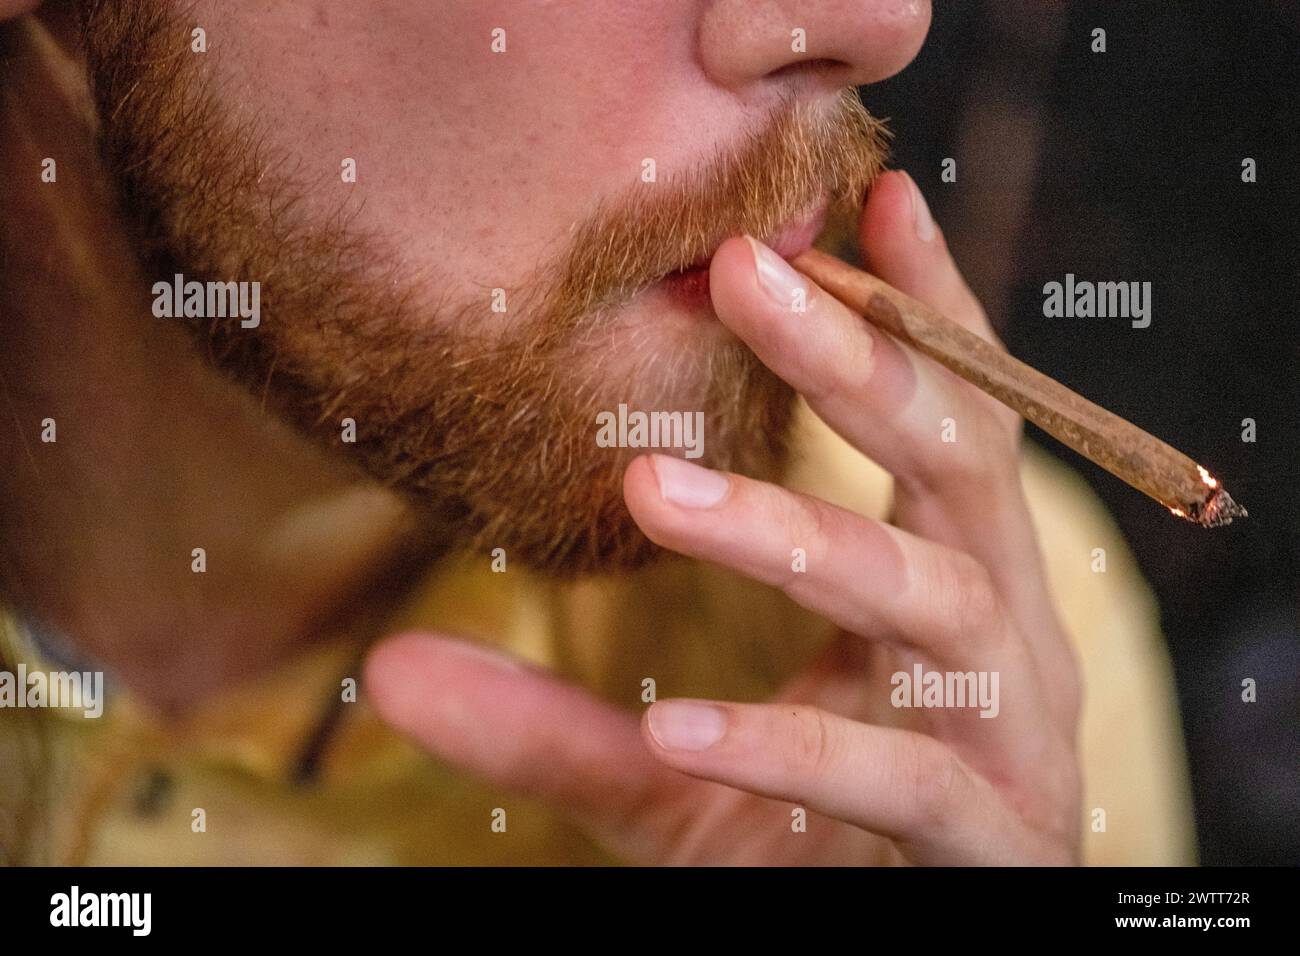 Nahaufnahme einer Person, die einen gemütlichen Rauch genießt. Stockfoto